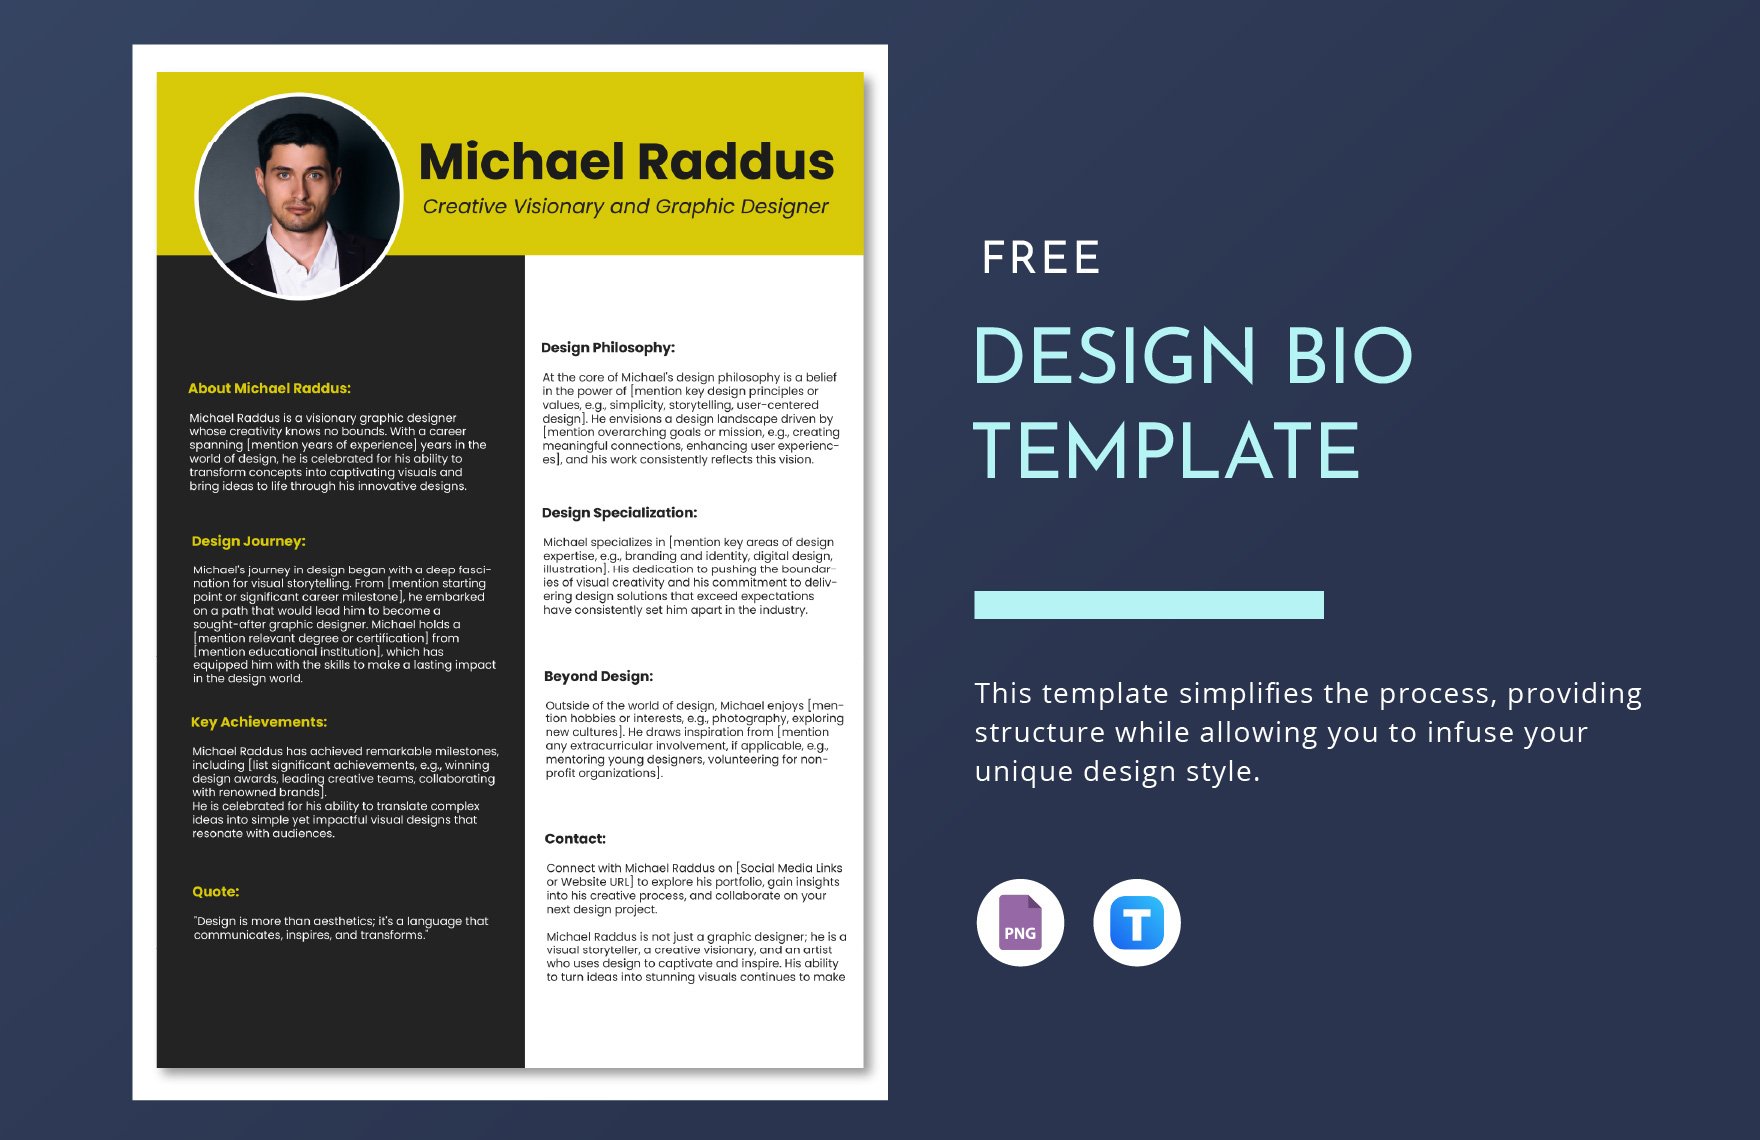 Free Design Bio Template